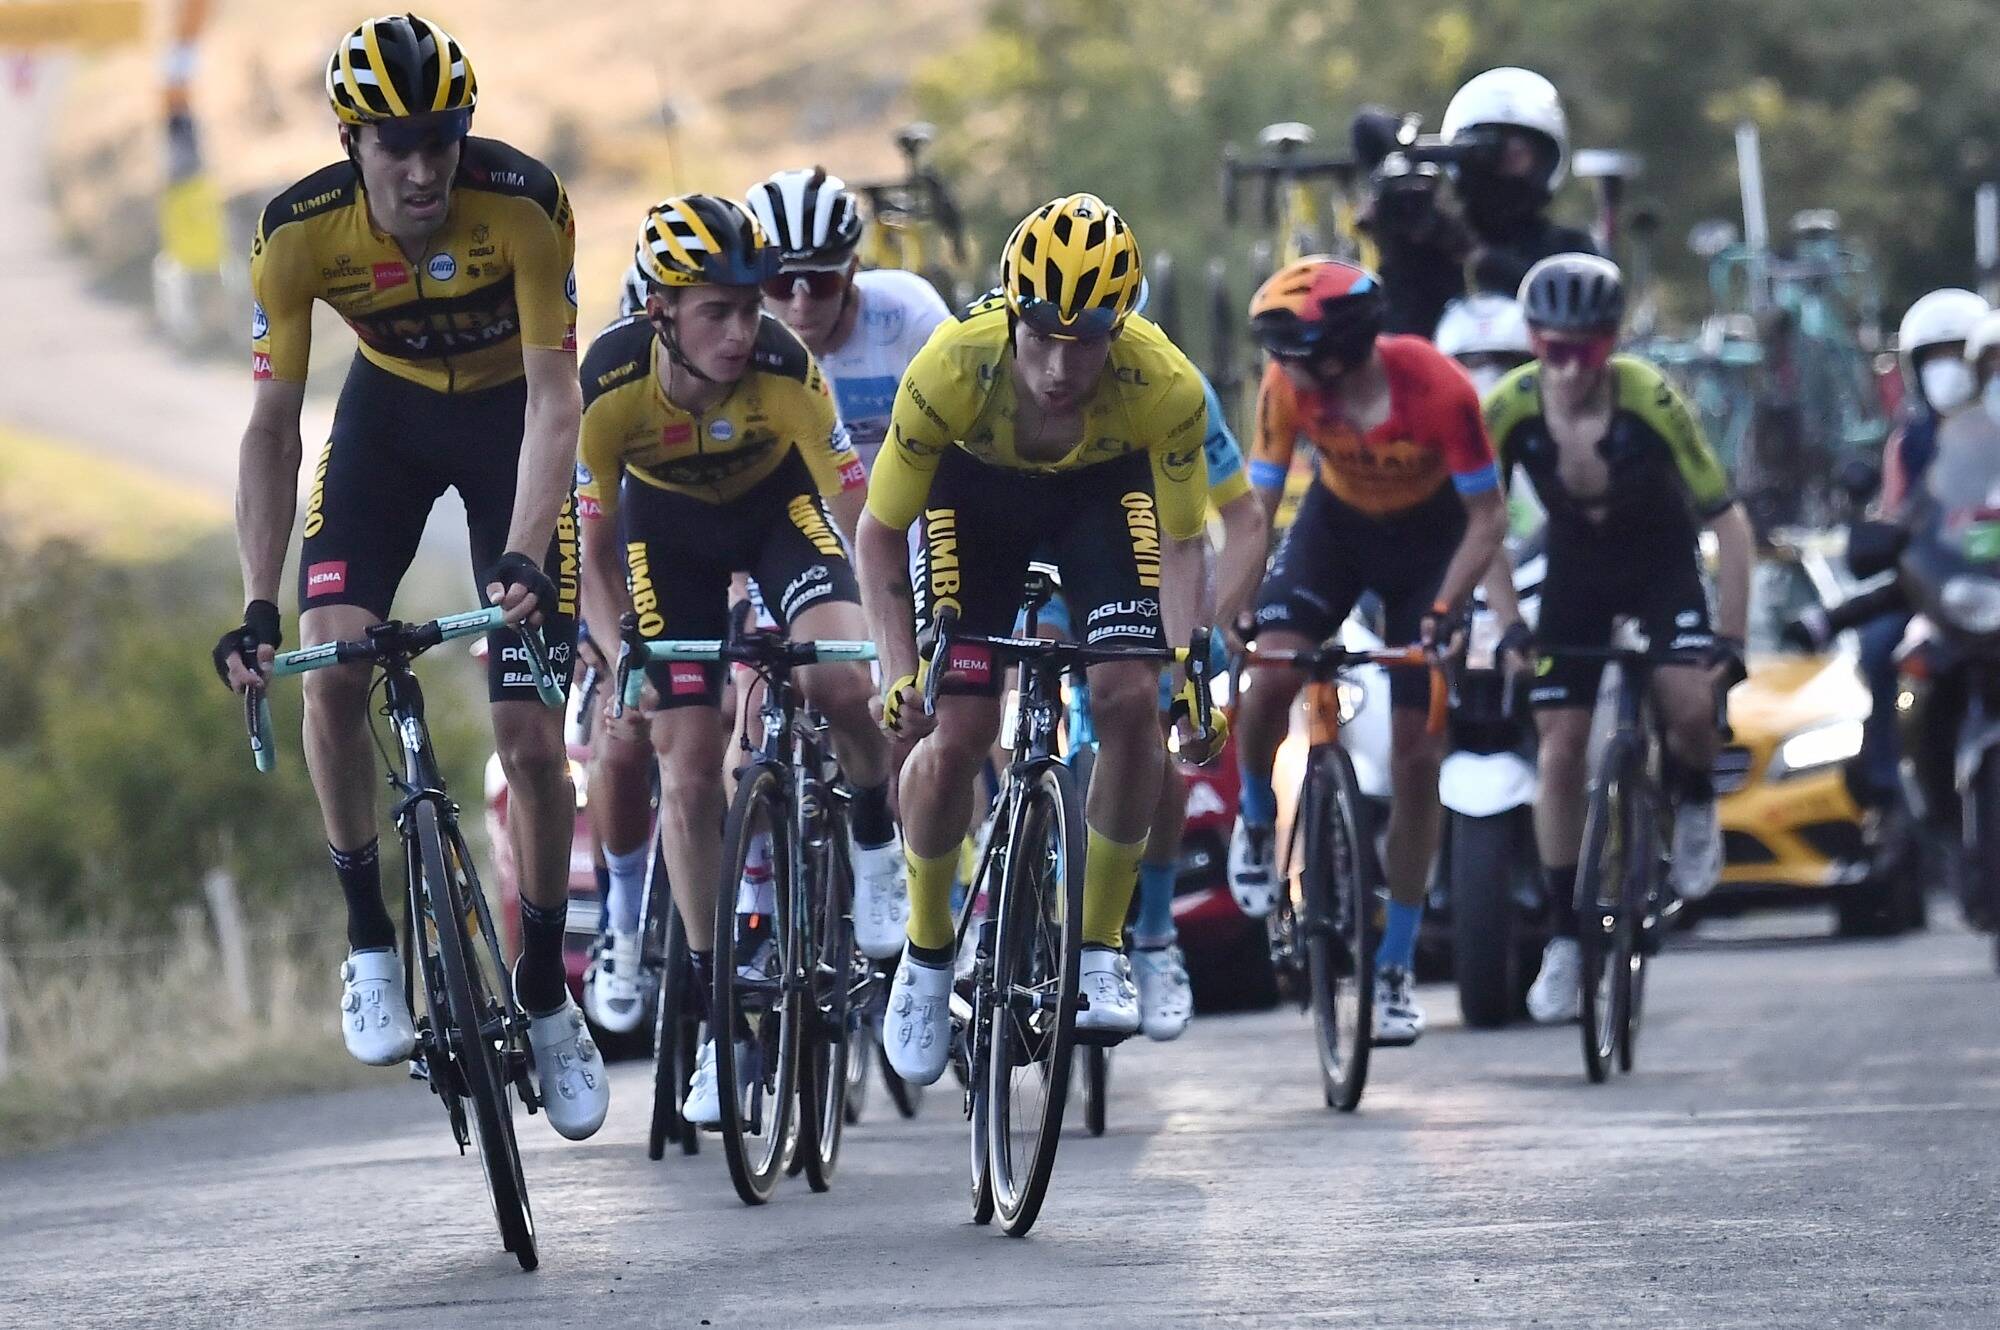 13e étape du Tour de France: le peloton à l'assaut du Grand Colombier, l'un des cols les plus difficiles